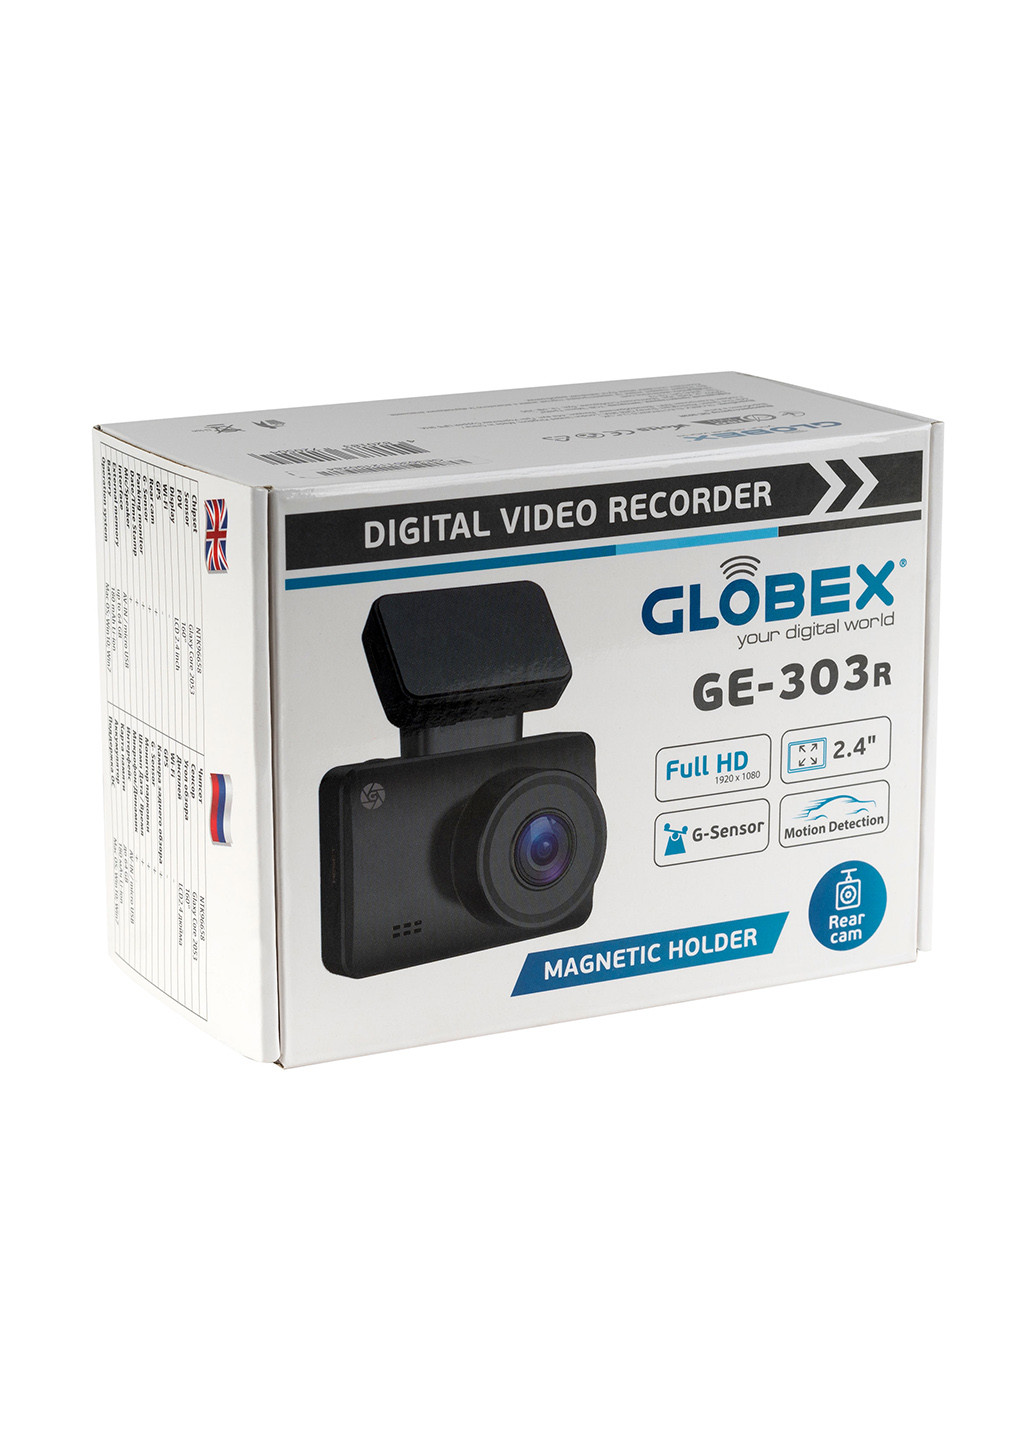 Відеореєстратор GE-303R Rear cam / Magnet Globex ge-303r rear cam/magnet (175984557)